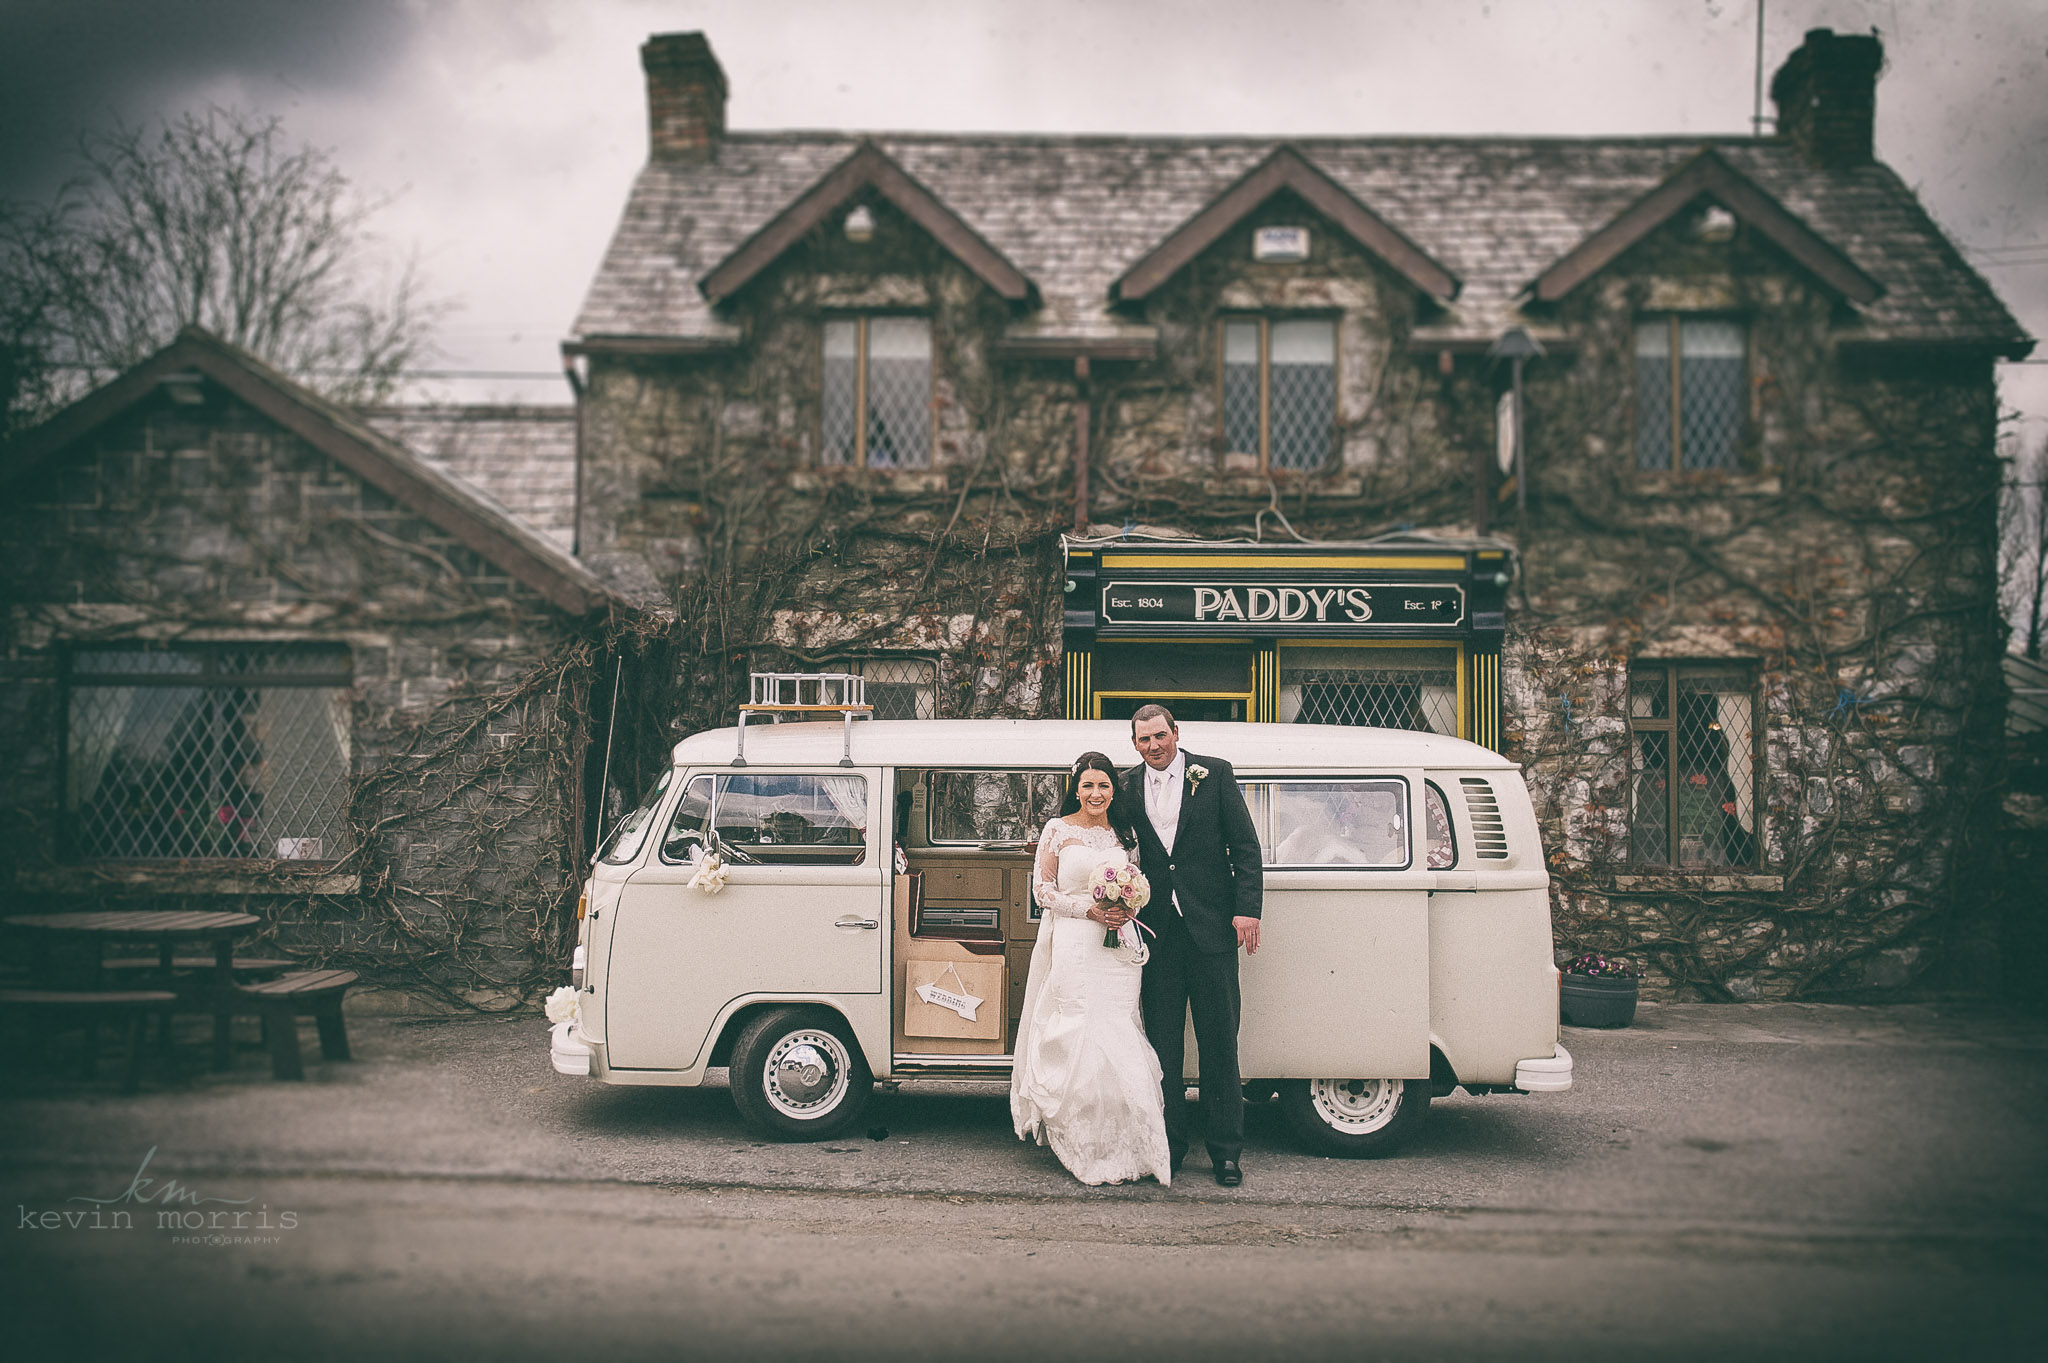 Eilis & Garrett and their fab retro VW wedding camper van